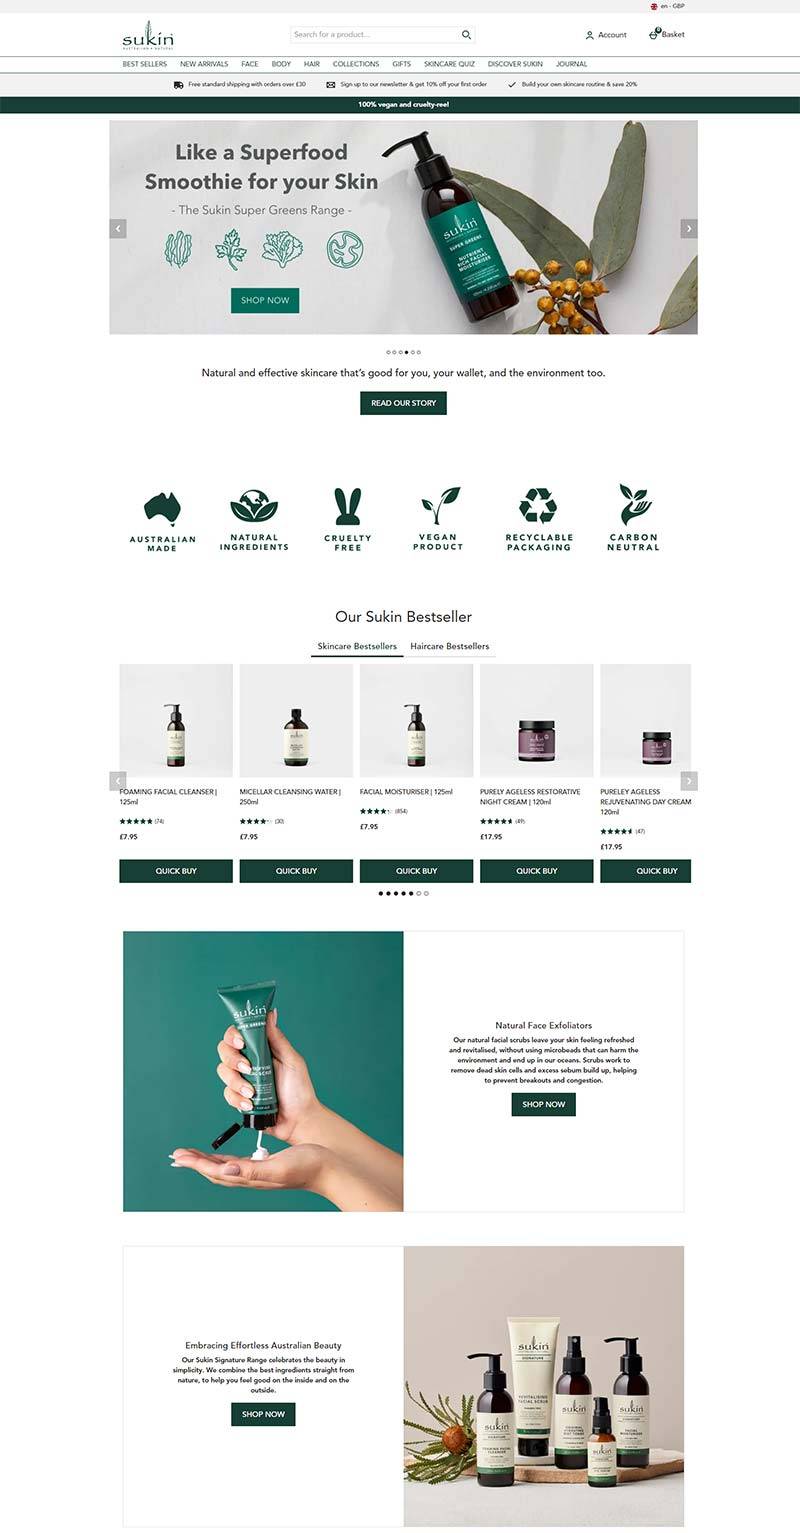 Sukin UK 苏芊-澳大利亚天然护肤品牌英国官网